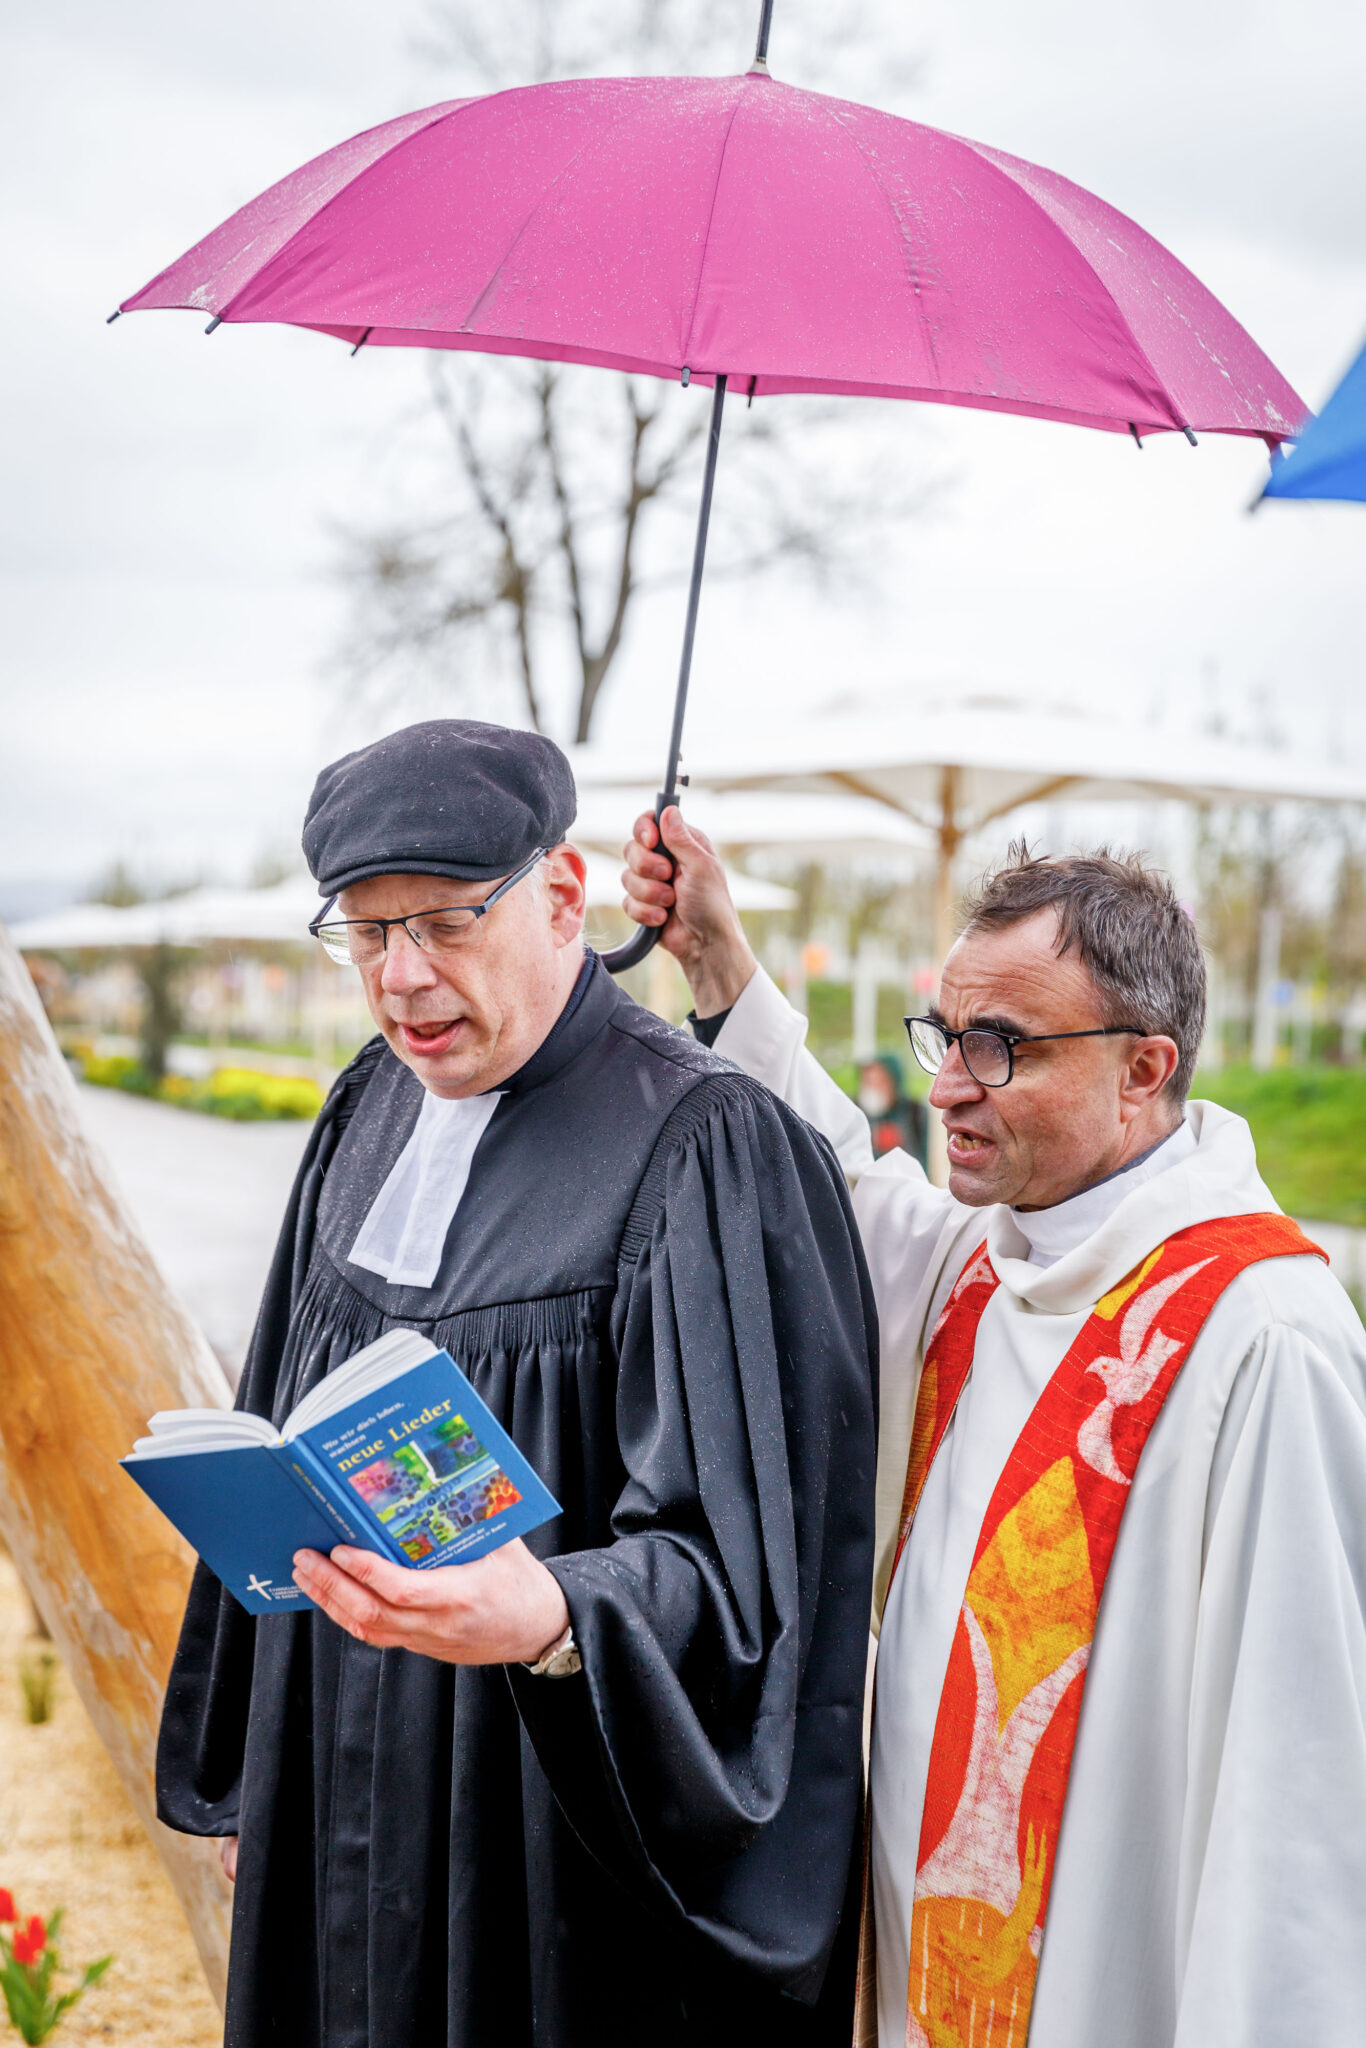 ein evangelischer und ein katholischer Geistlicher, beide singen, einer hält das Gesangbuch, einer hält den Regenschirm über beide